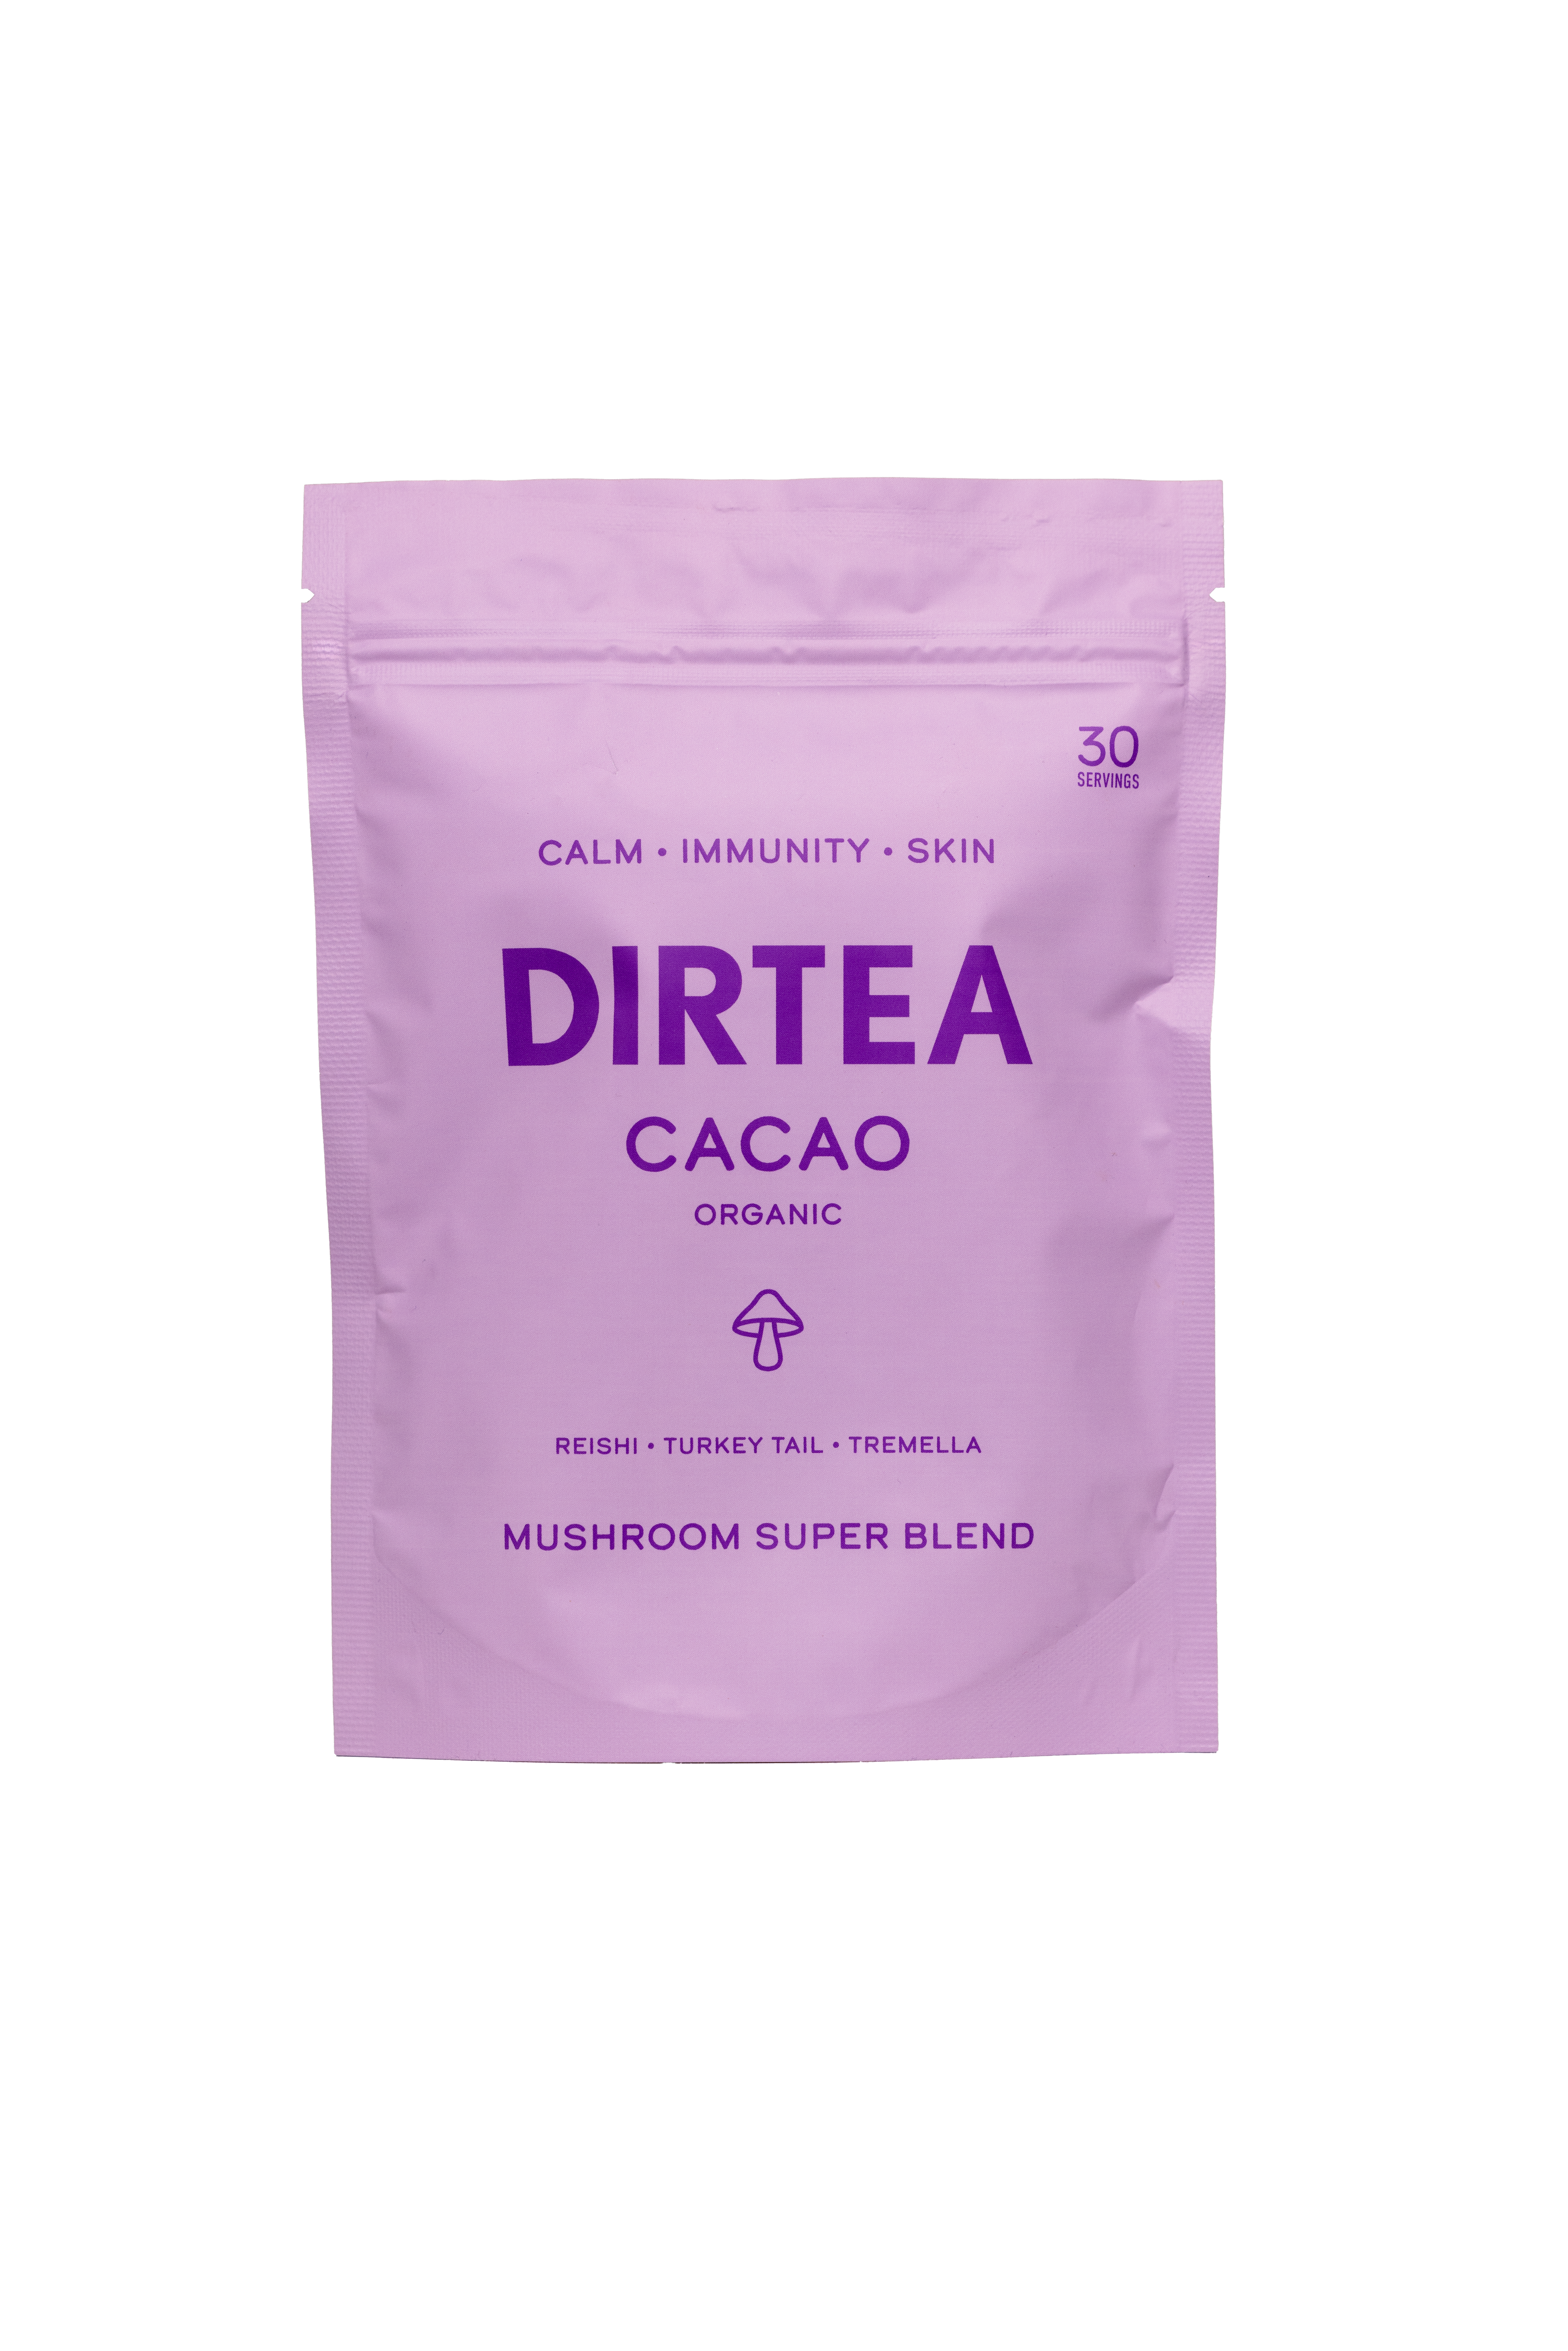 DIRTEA Cacao Mushroom Powder